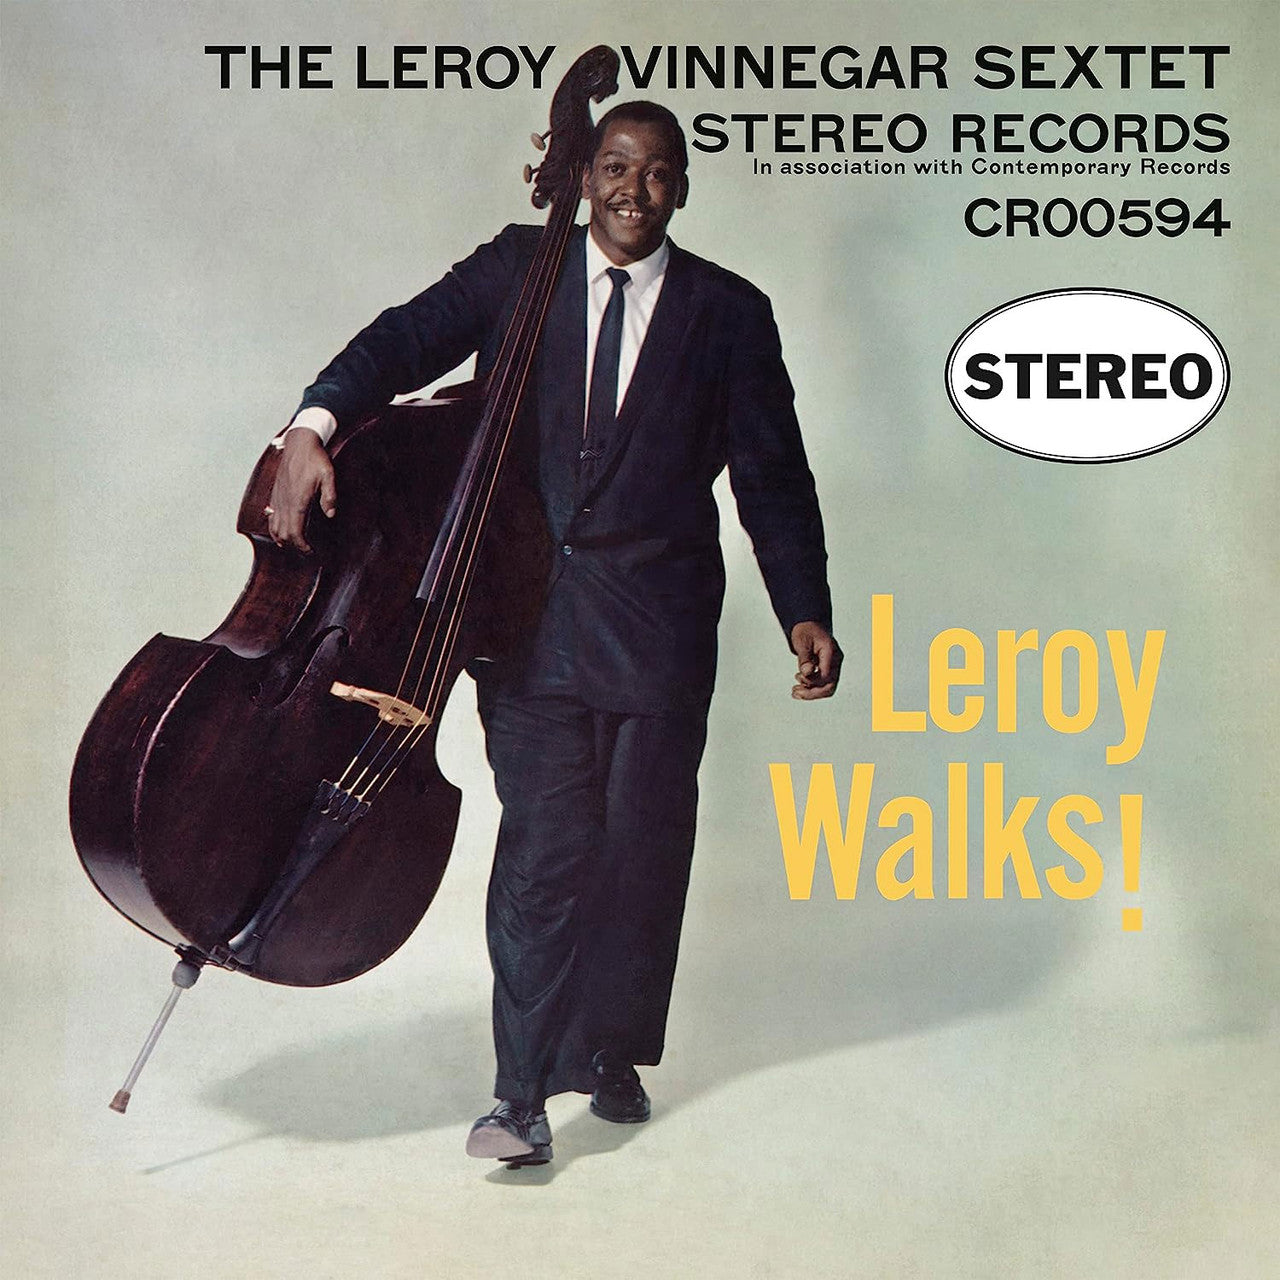 El Sexteto Leroy Vinnegar - ¡Leroy Walks! - LP contemporáneo